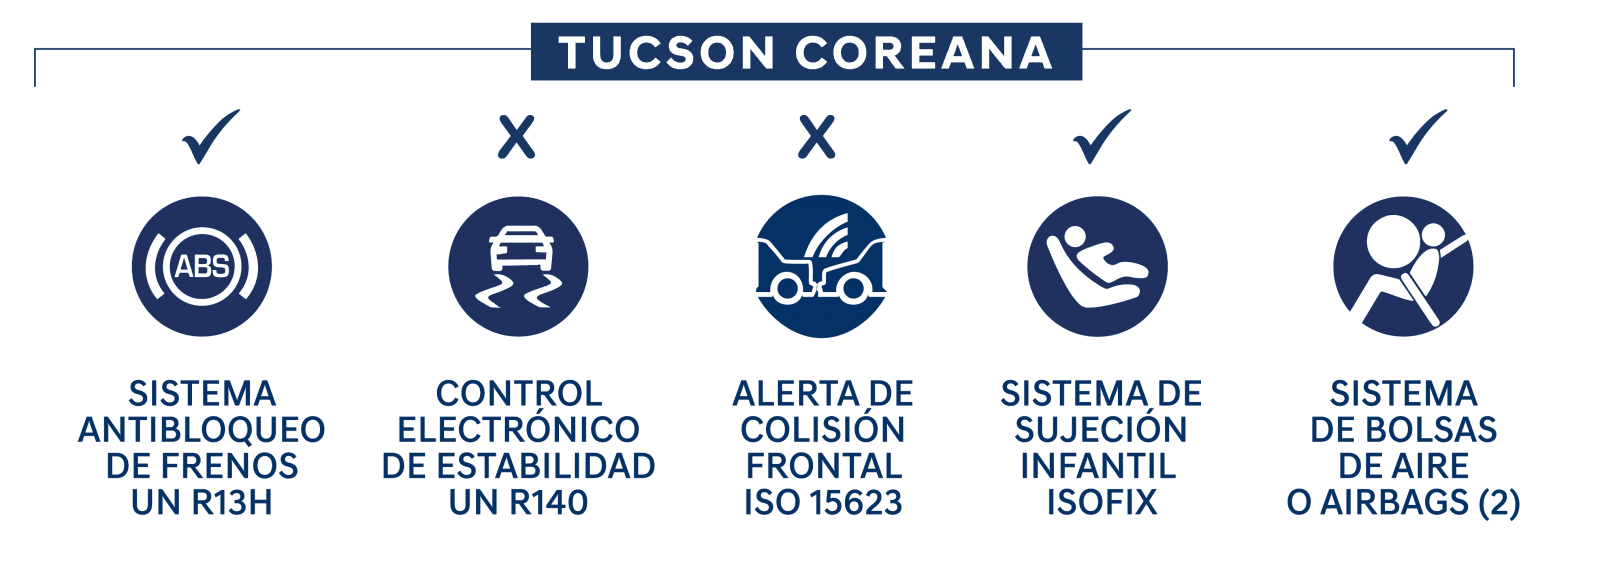 Legal Tucson Coreana